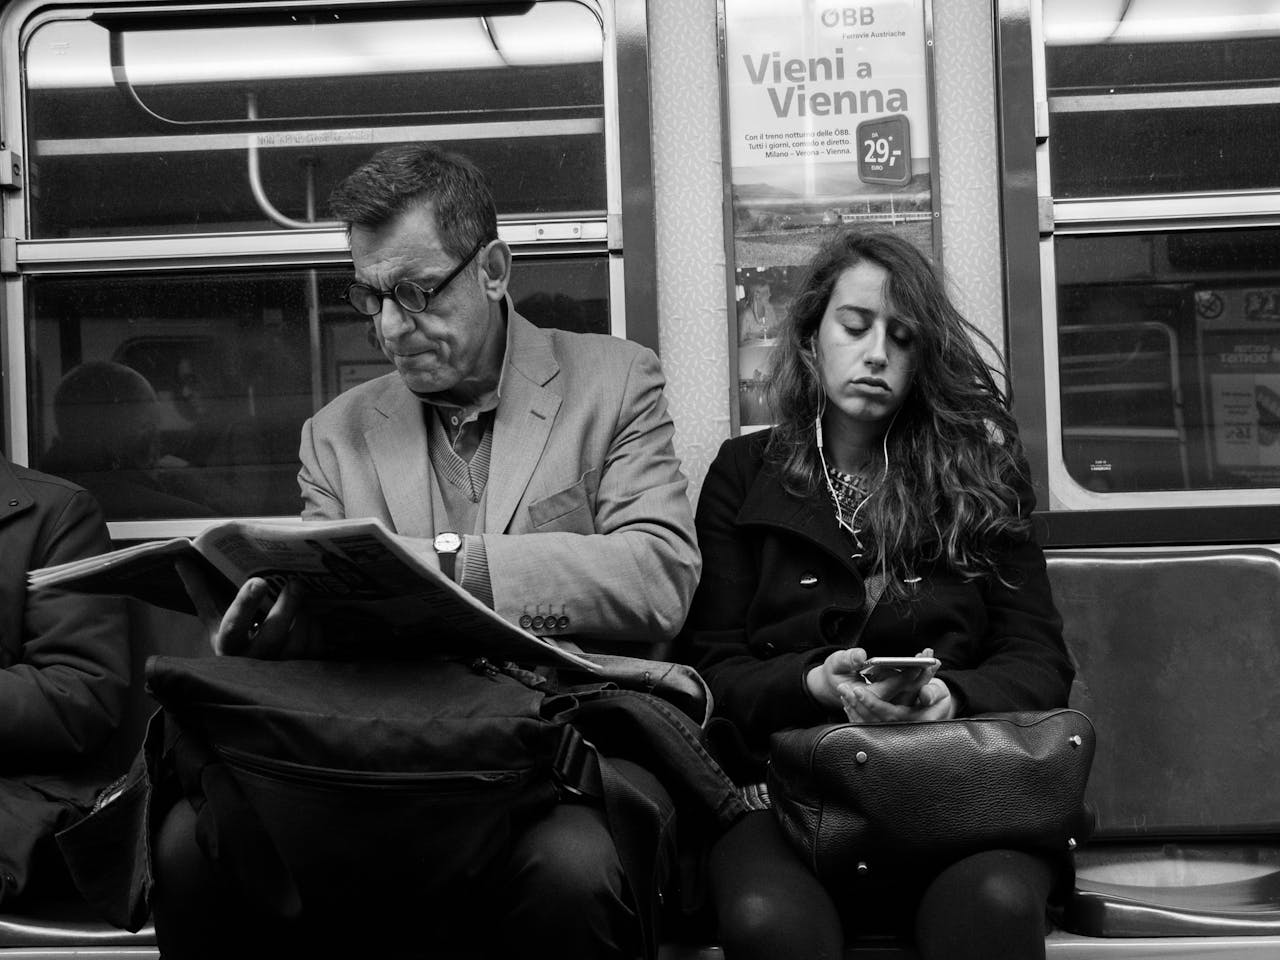 Twee personen in de metro. Een persoon leest de krant, de andere persoon zit op een smartphone en heeft oortjes in.